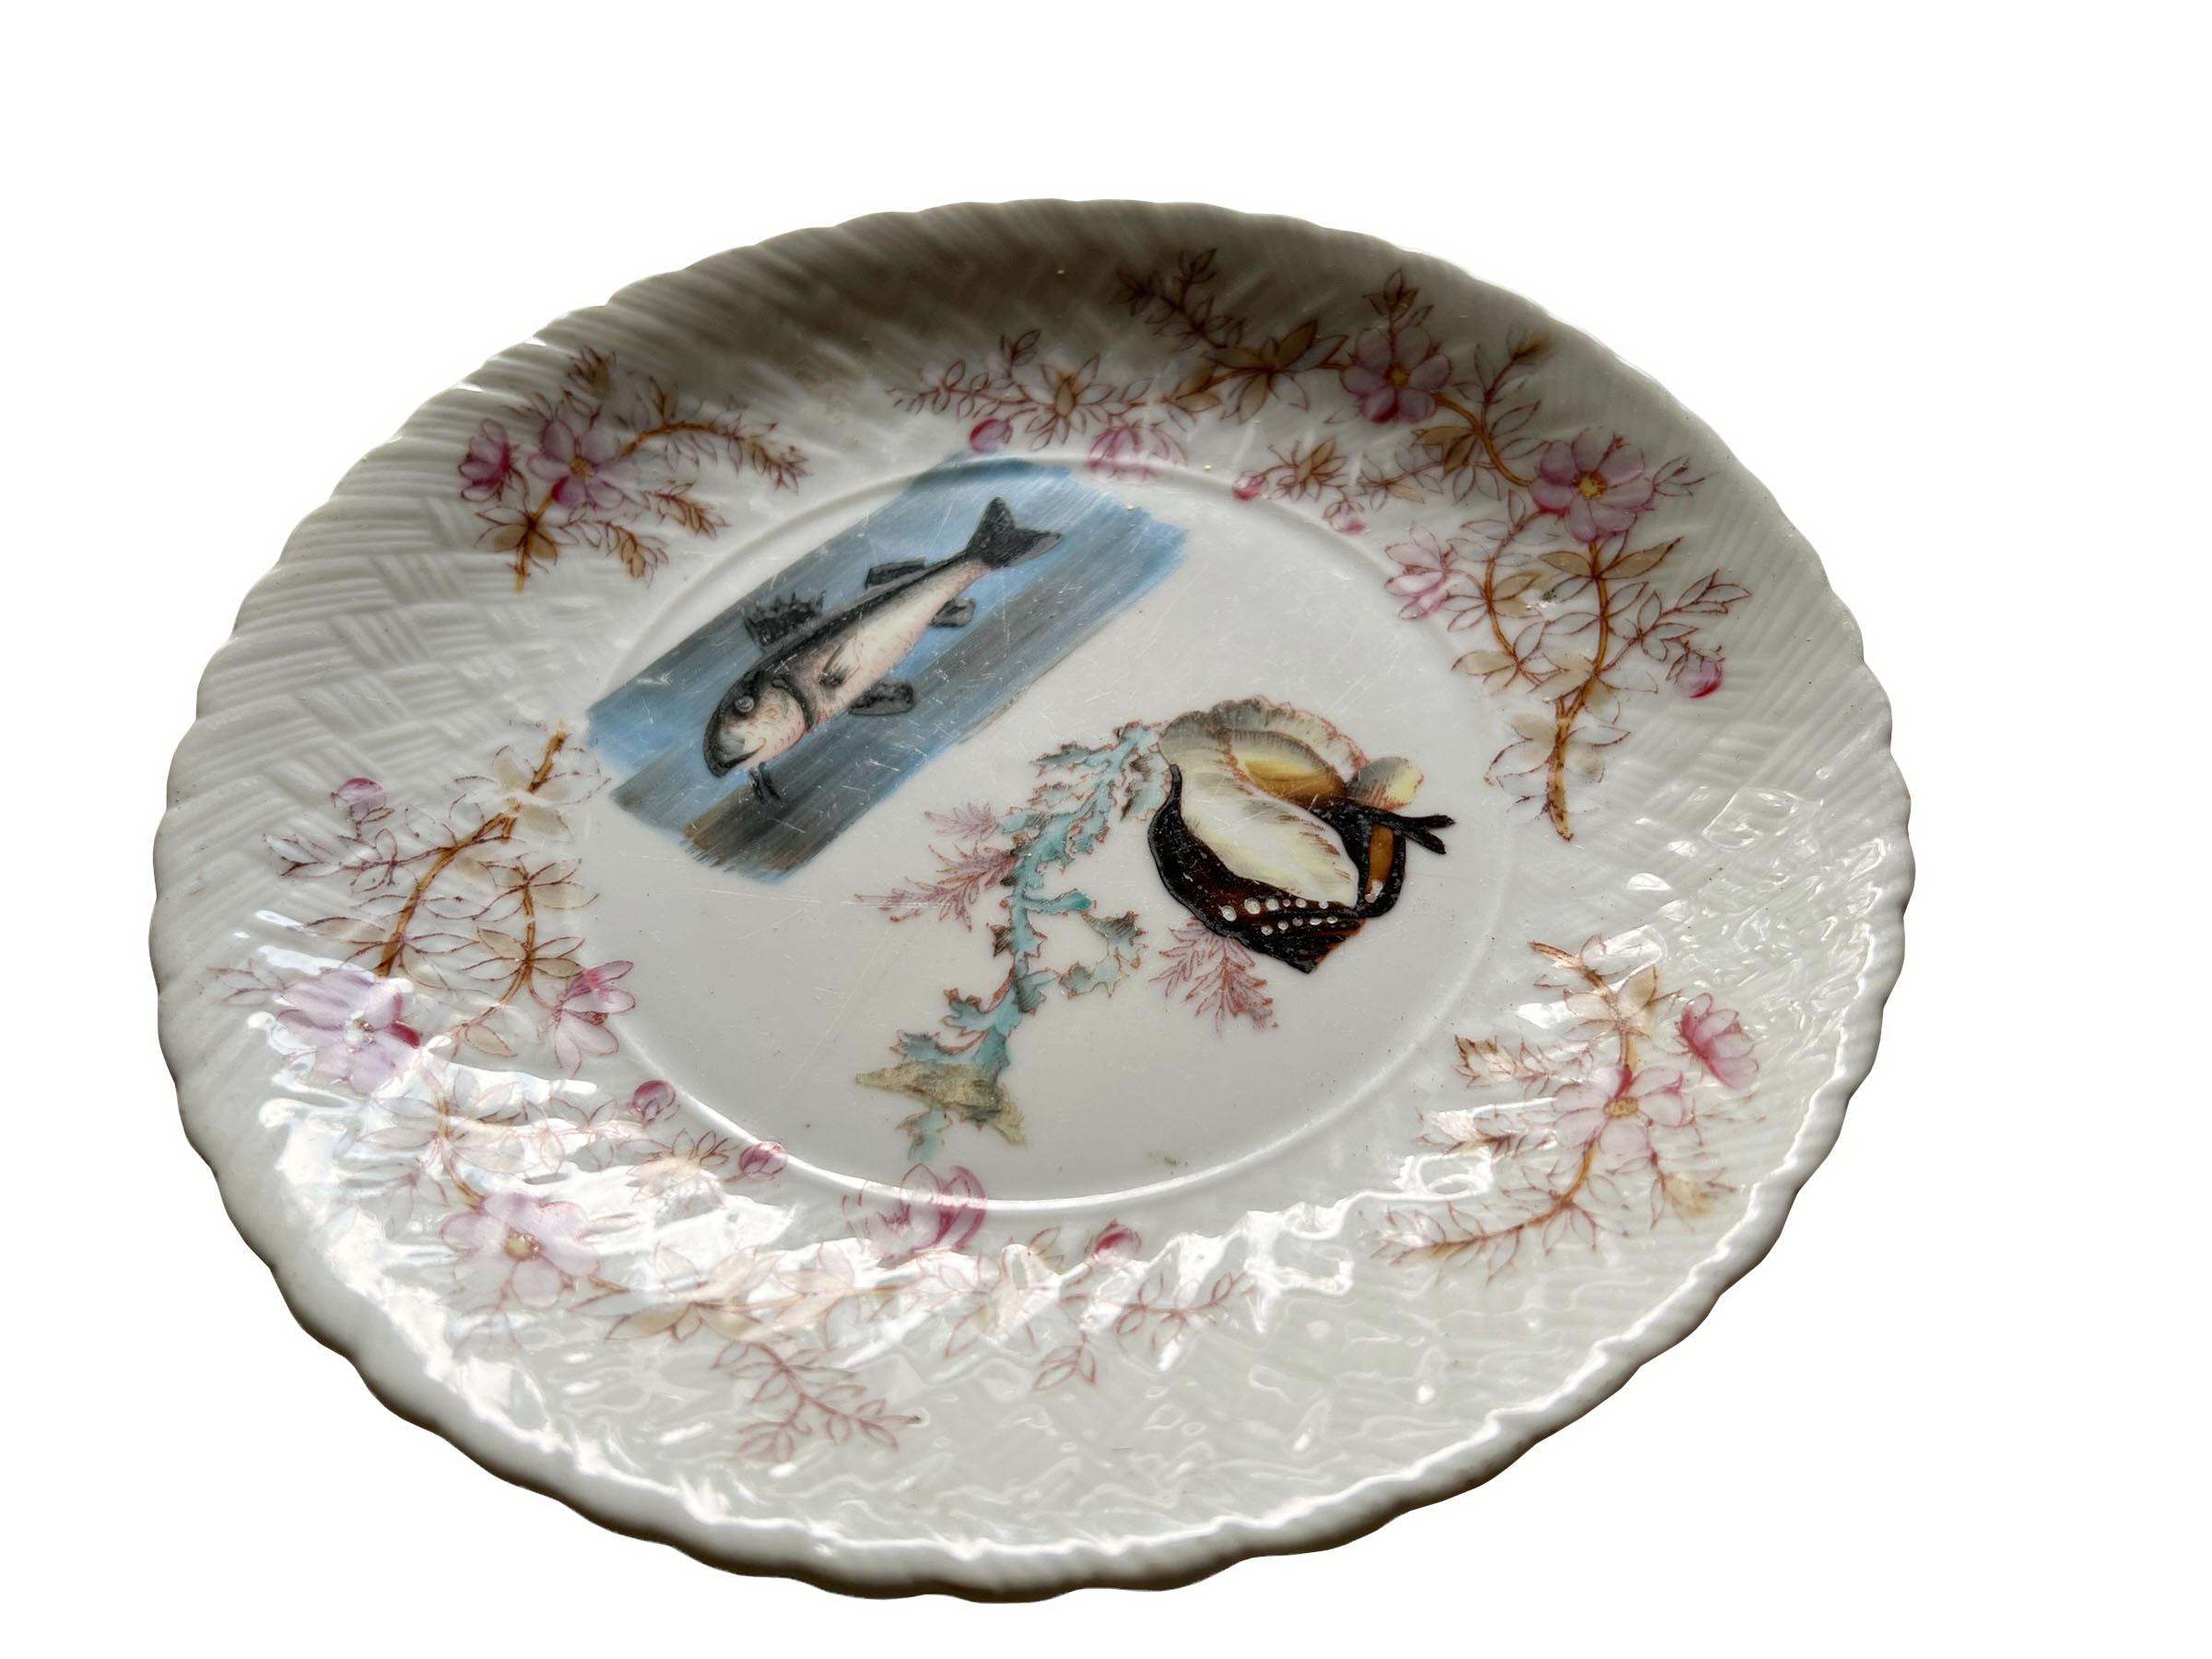 Assiette à poisson en porcelaine ancienne peinte à la main avec une belle bordure à décor floral. De beaux détails.
 